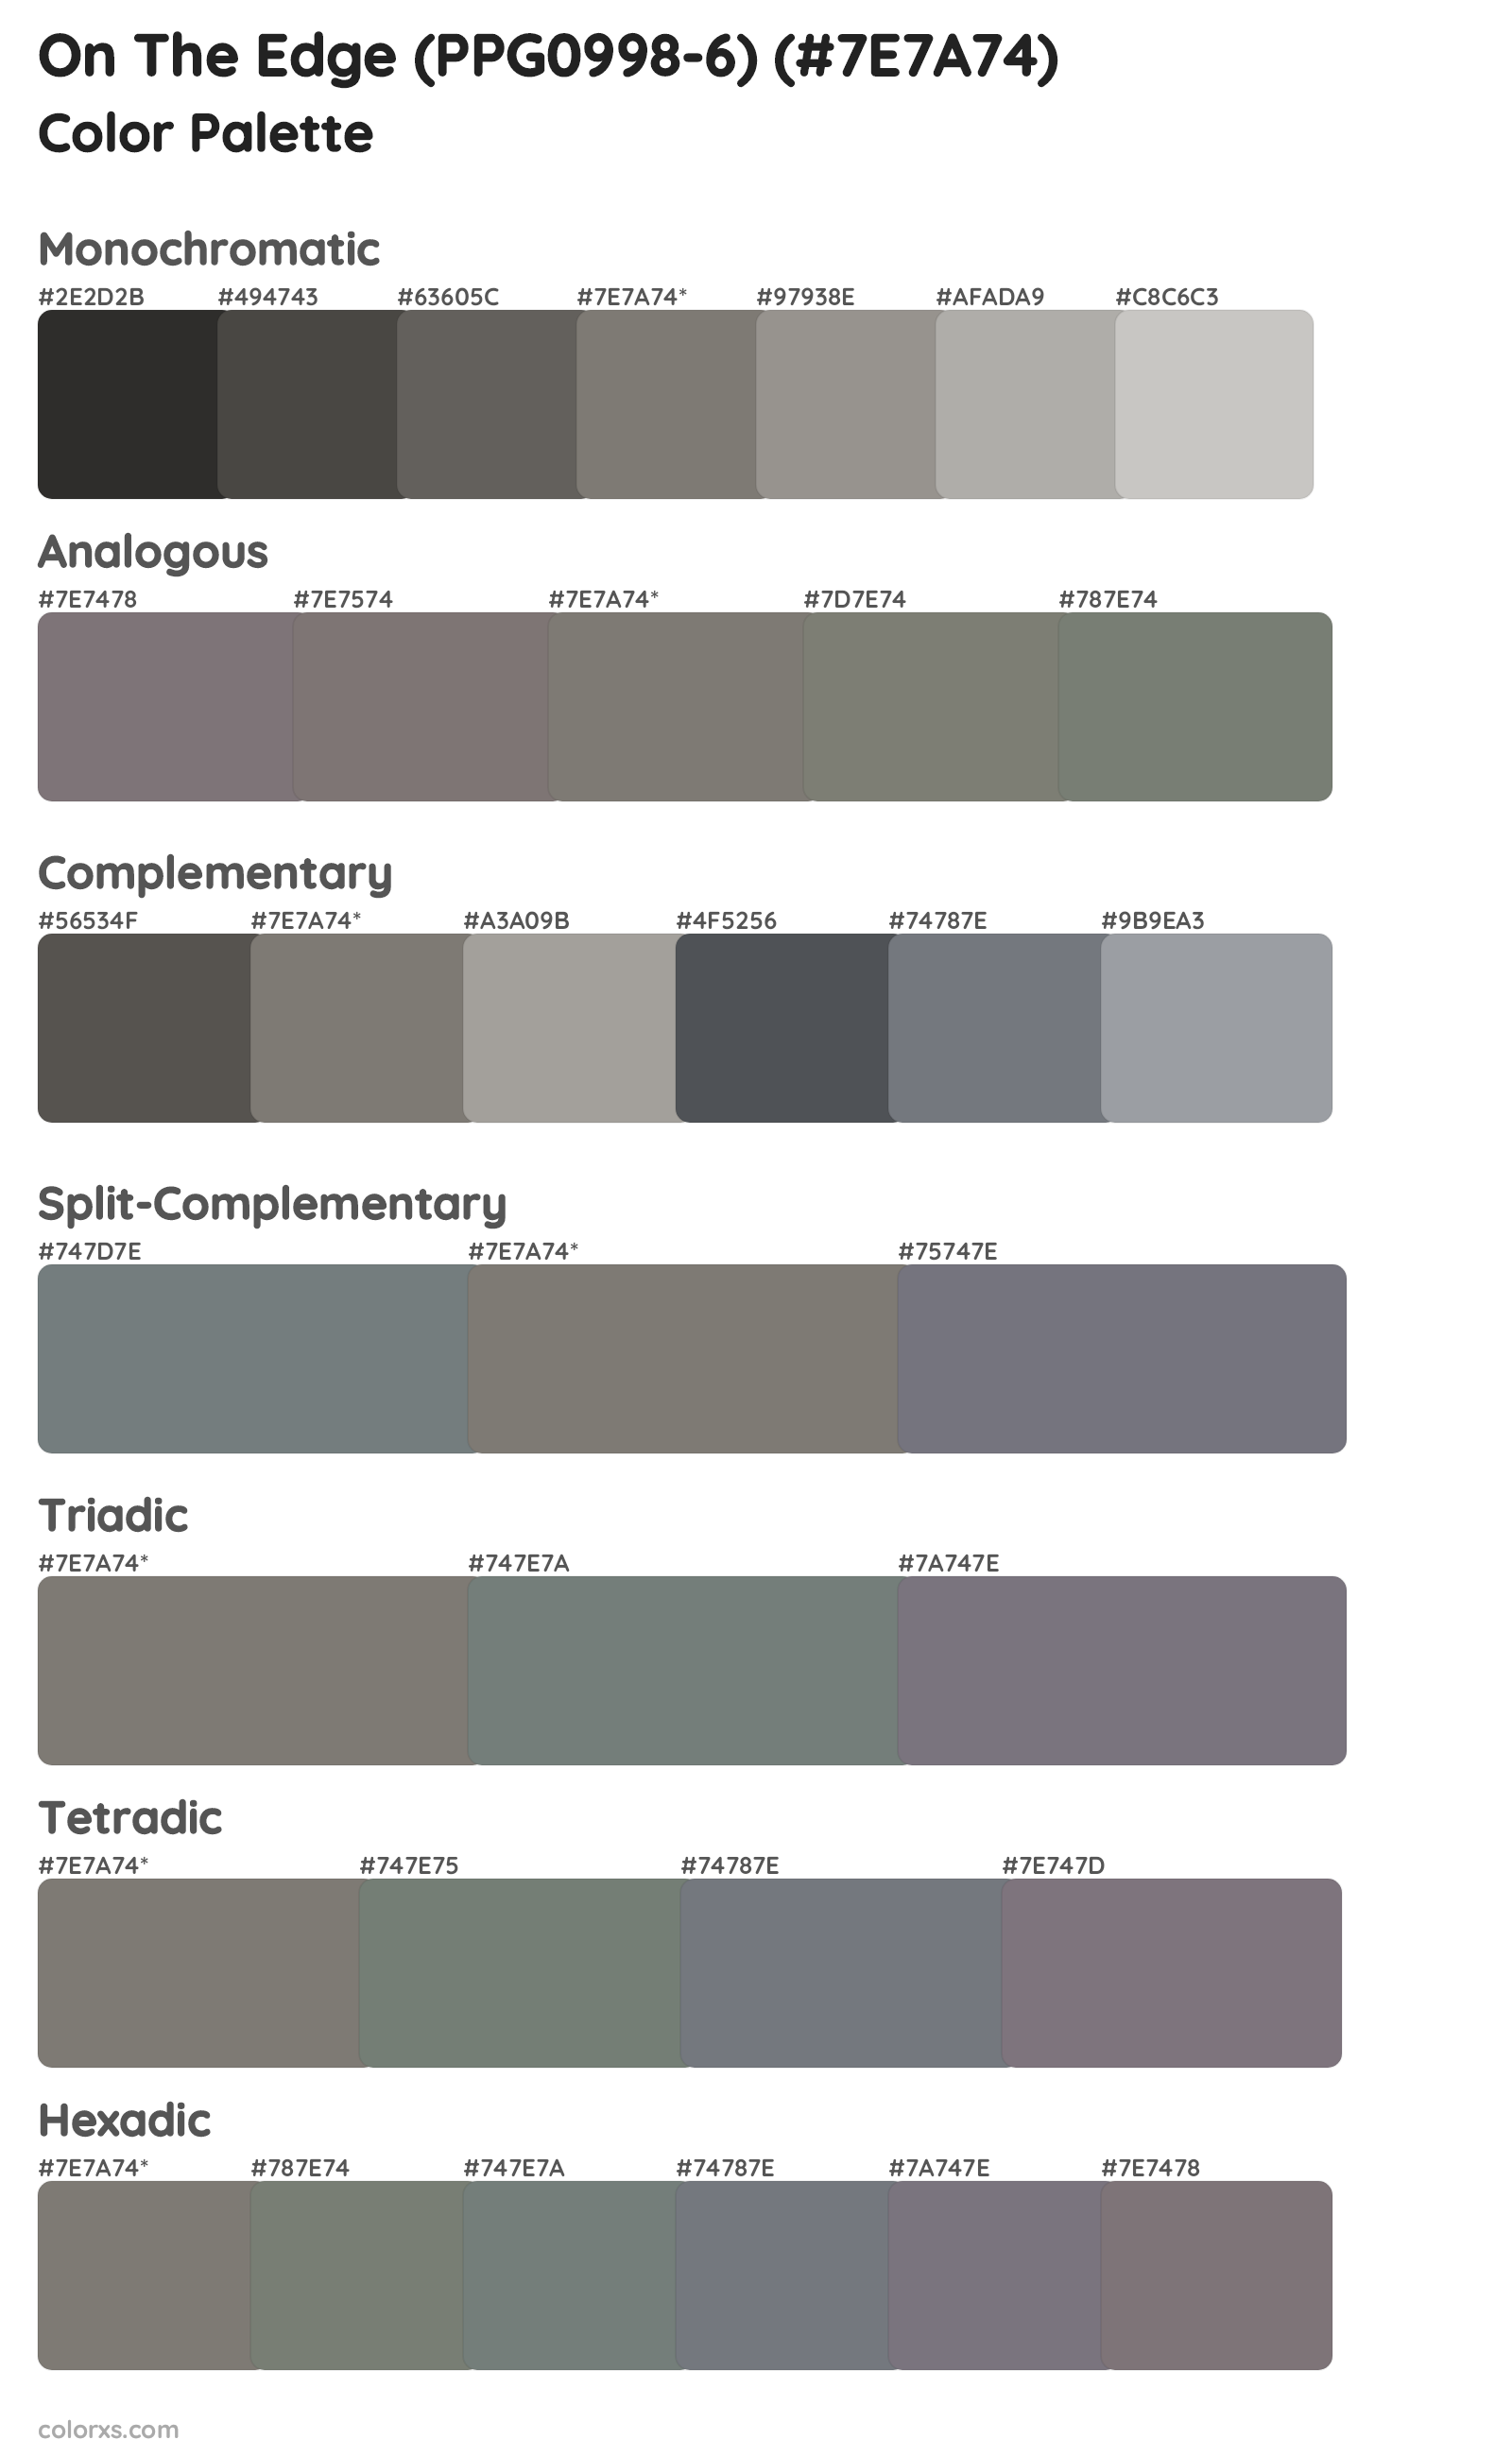 On The Edge (PPG0998-6) Color Scheme Palettes